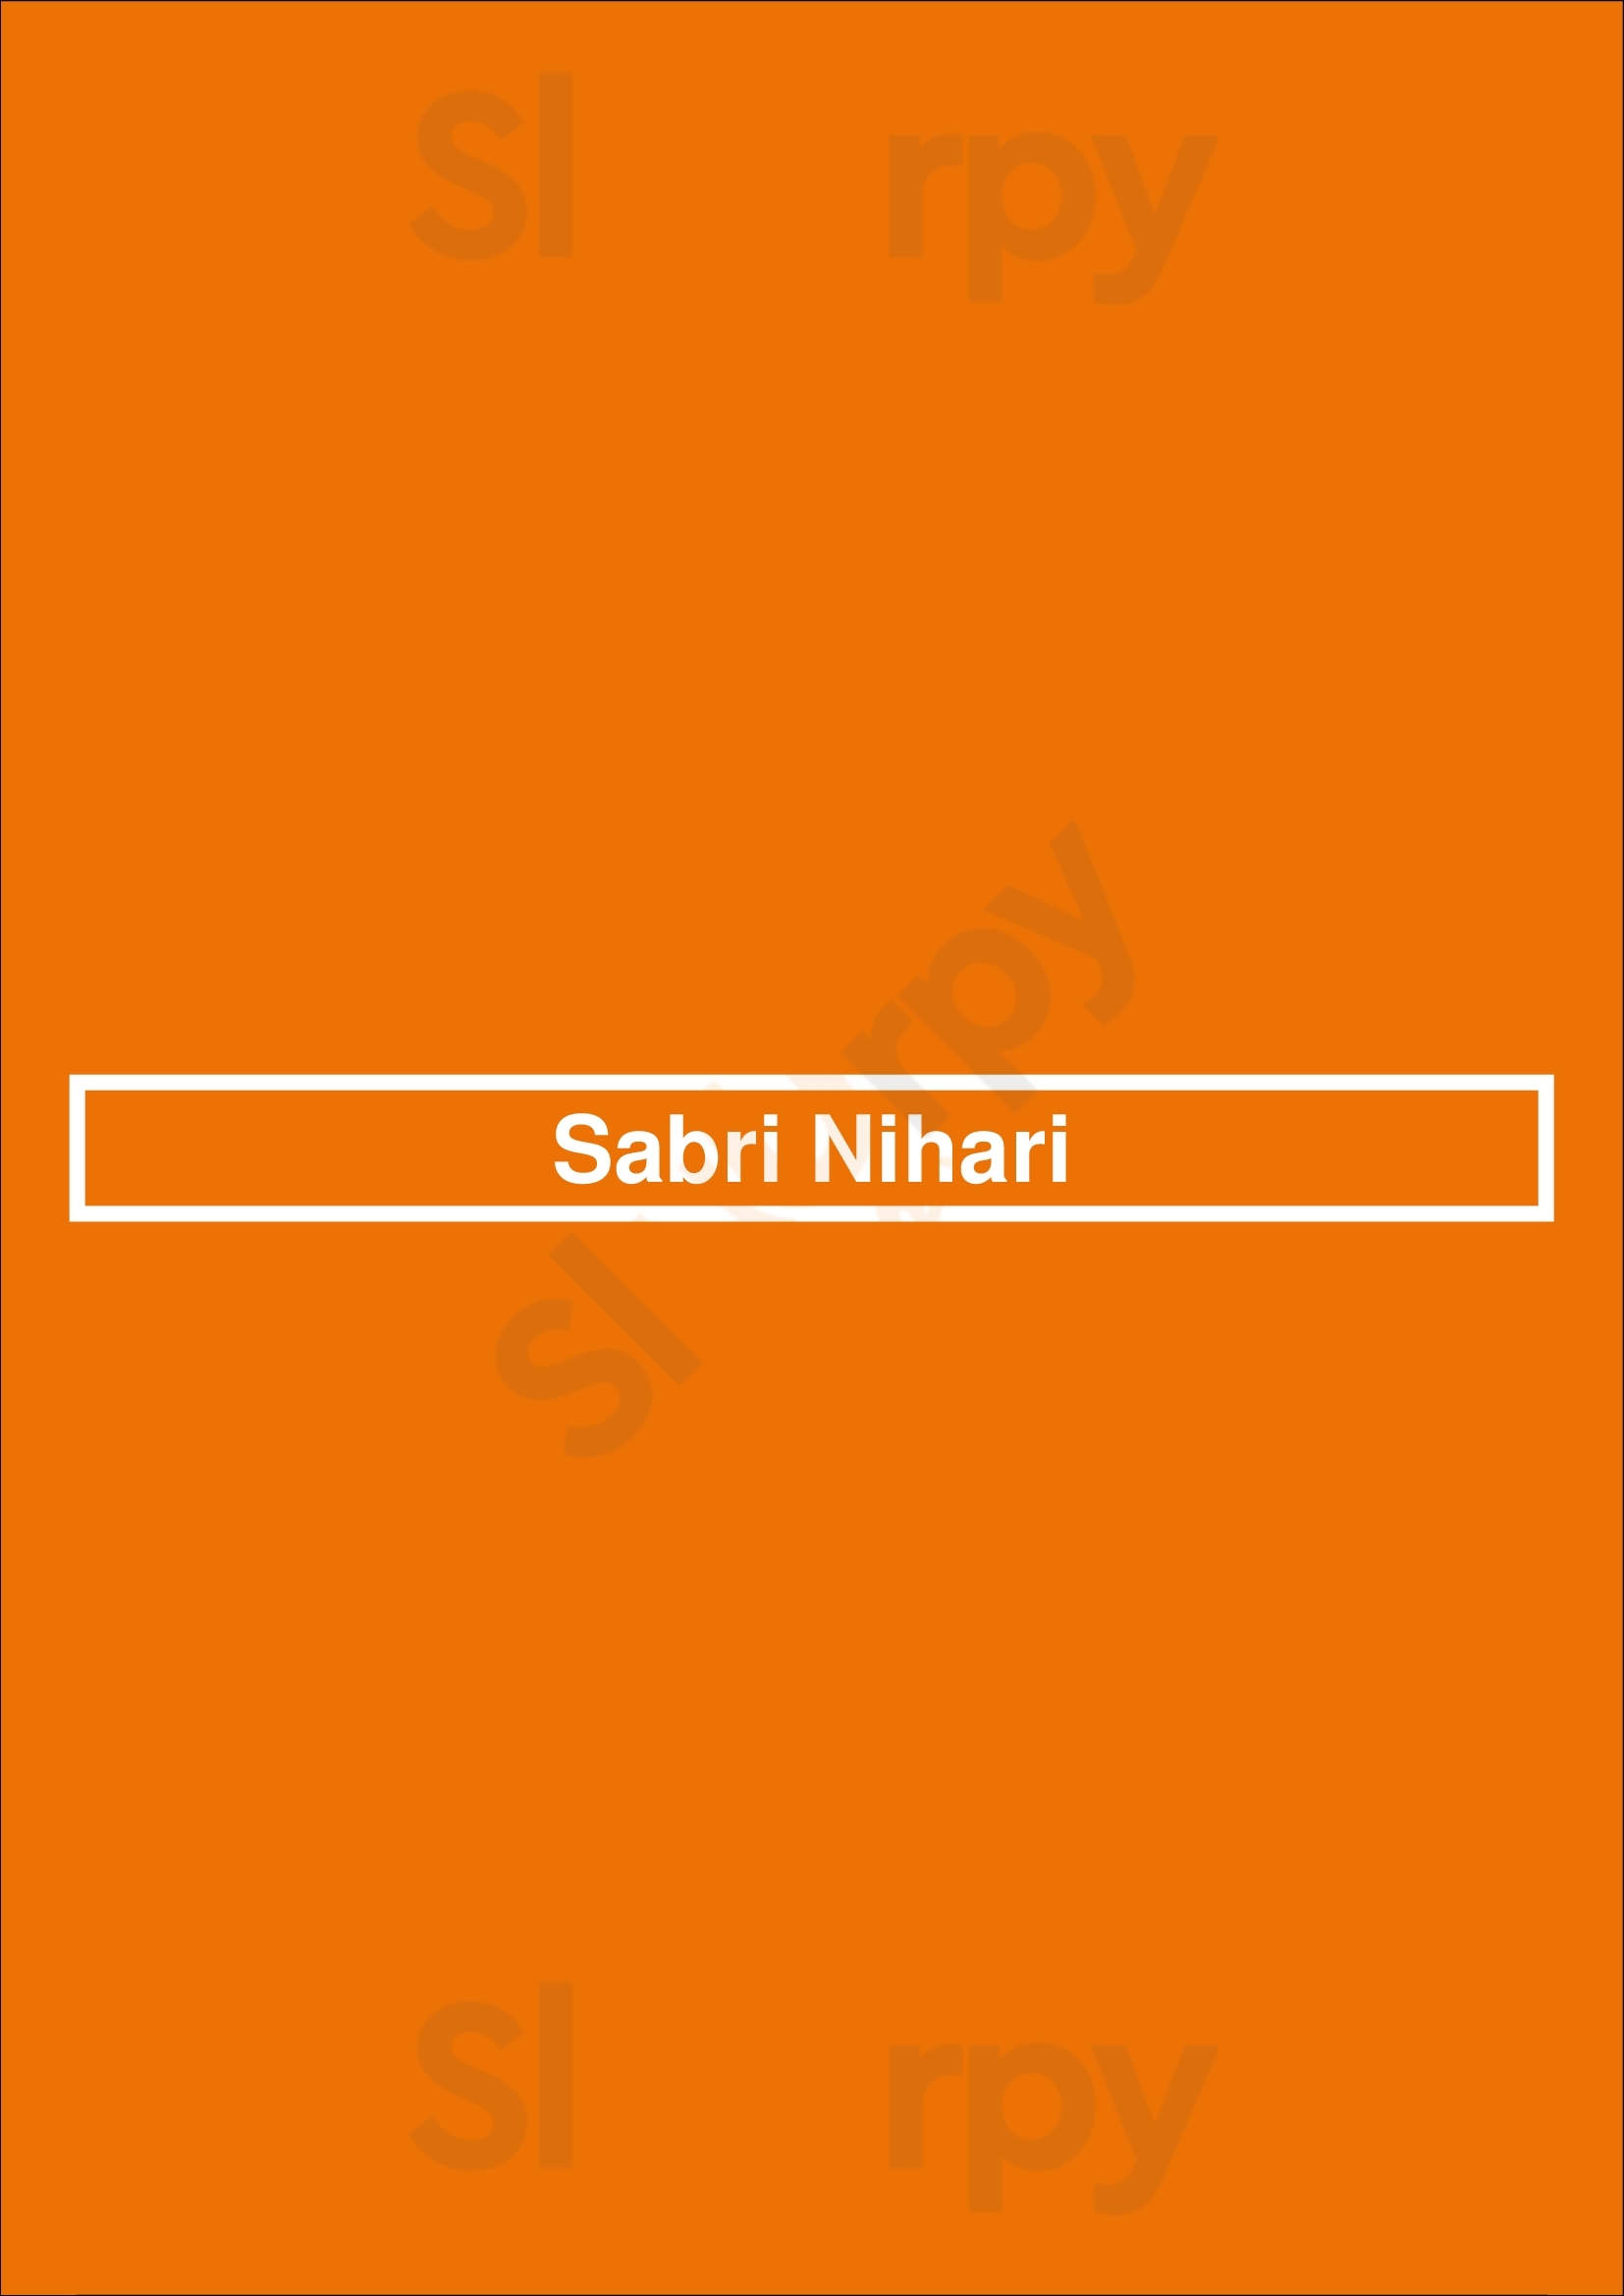 Sabri Nihari Chicago Menu - 1